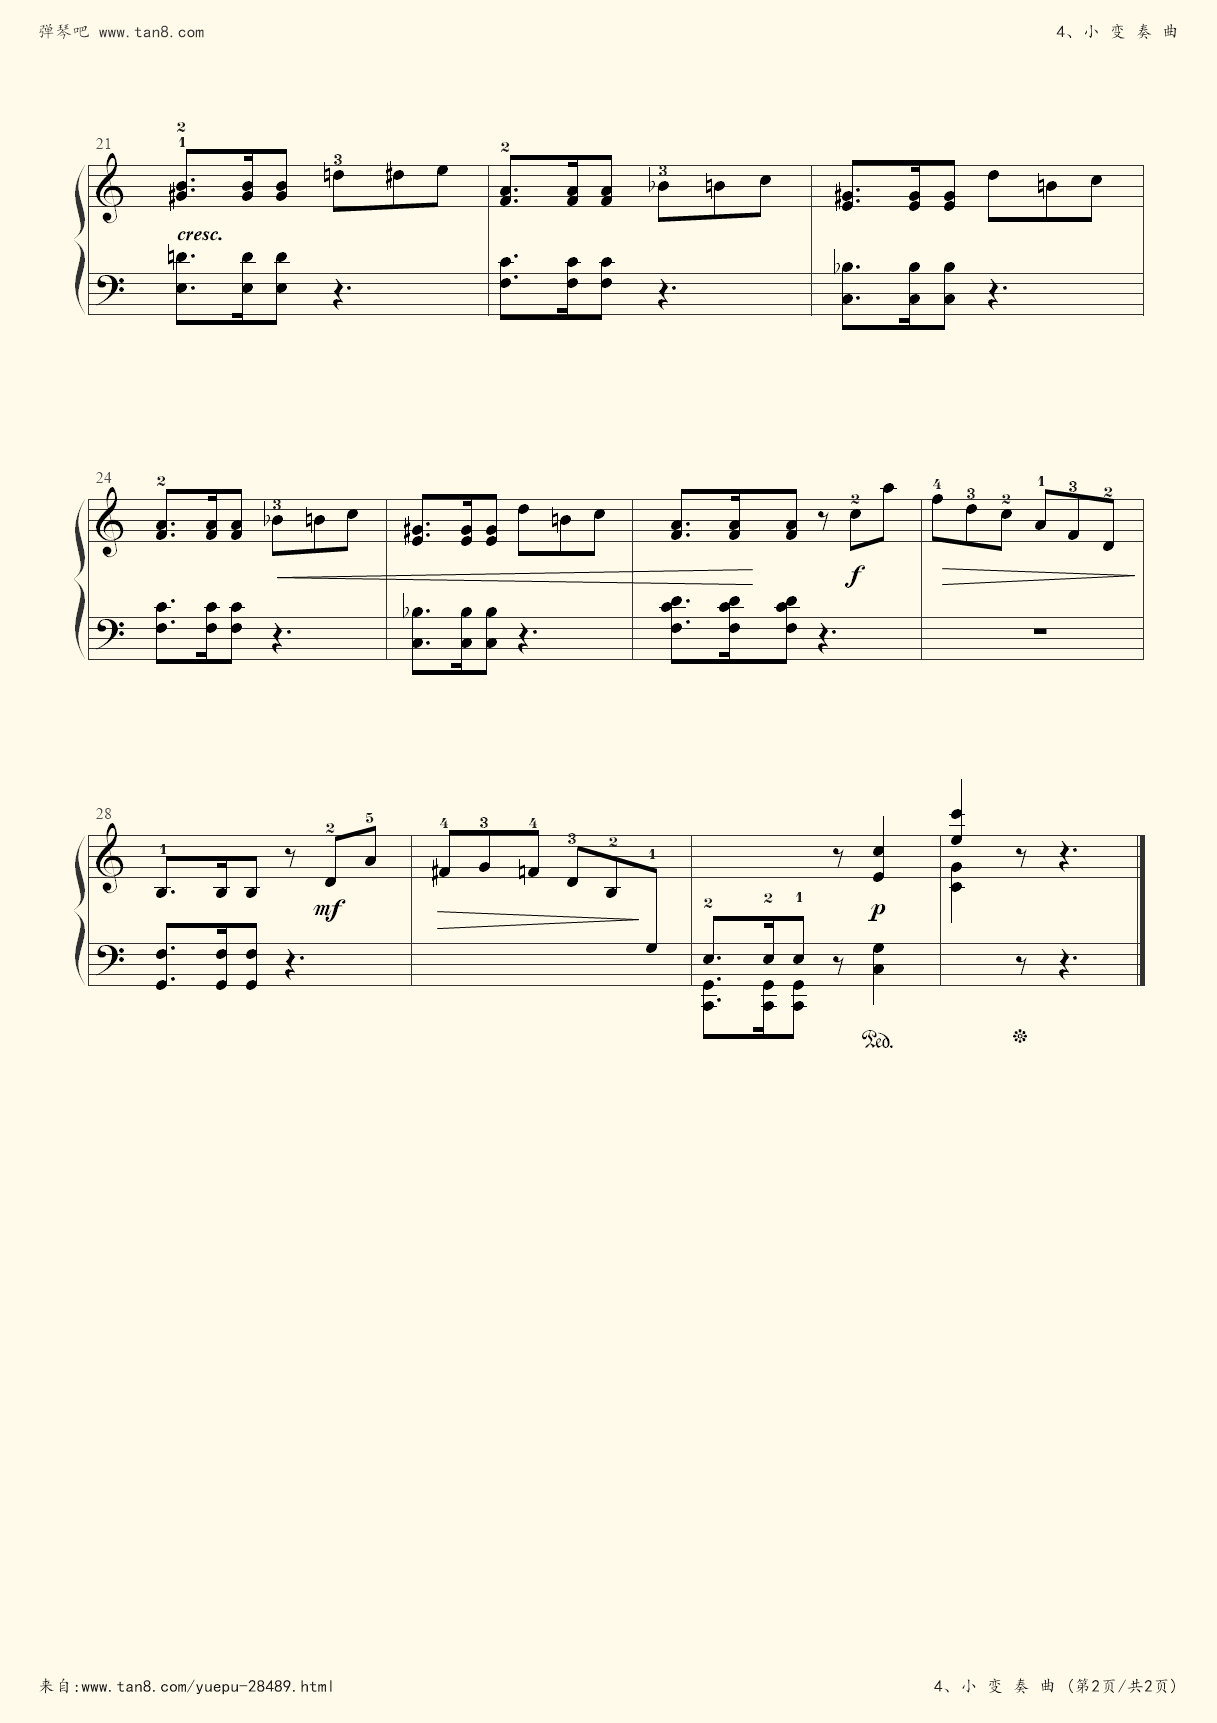 钢琴考级6-8级谱子(钢琴6级考级必弹曲目谱子)